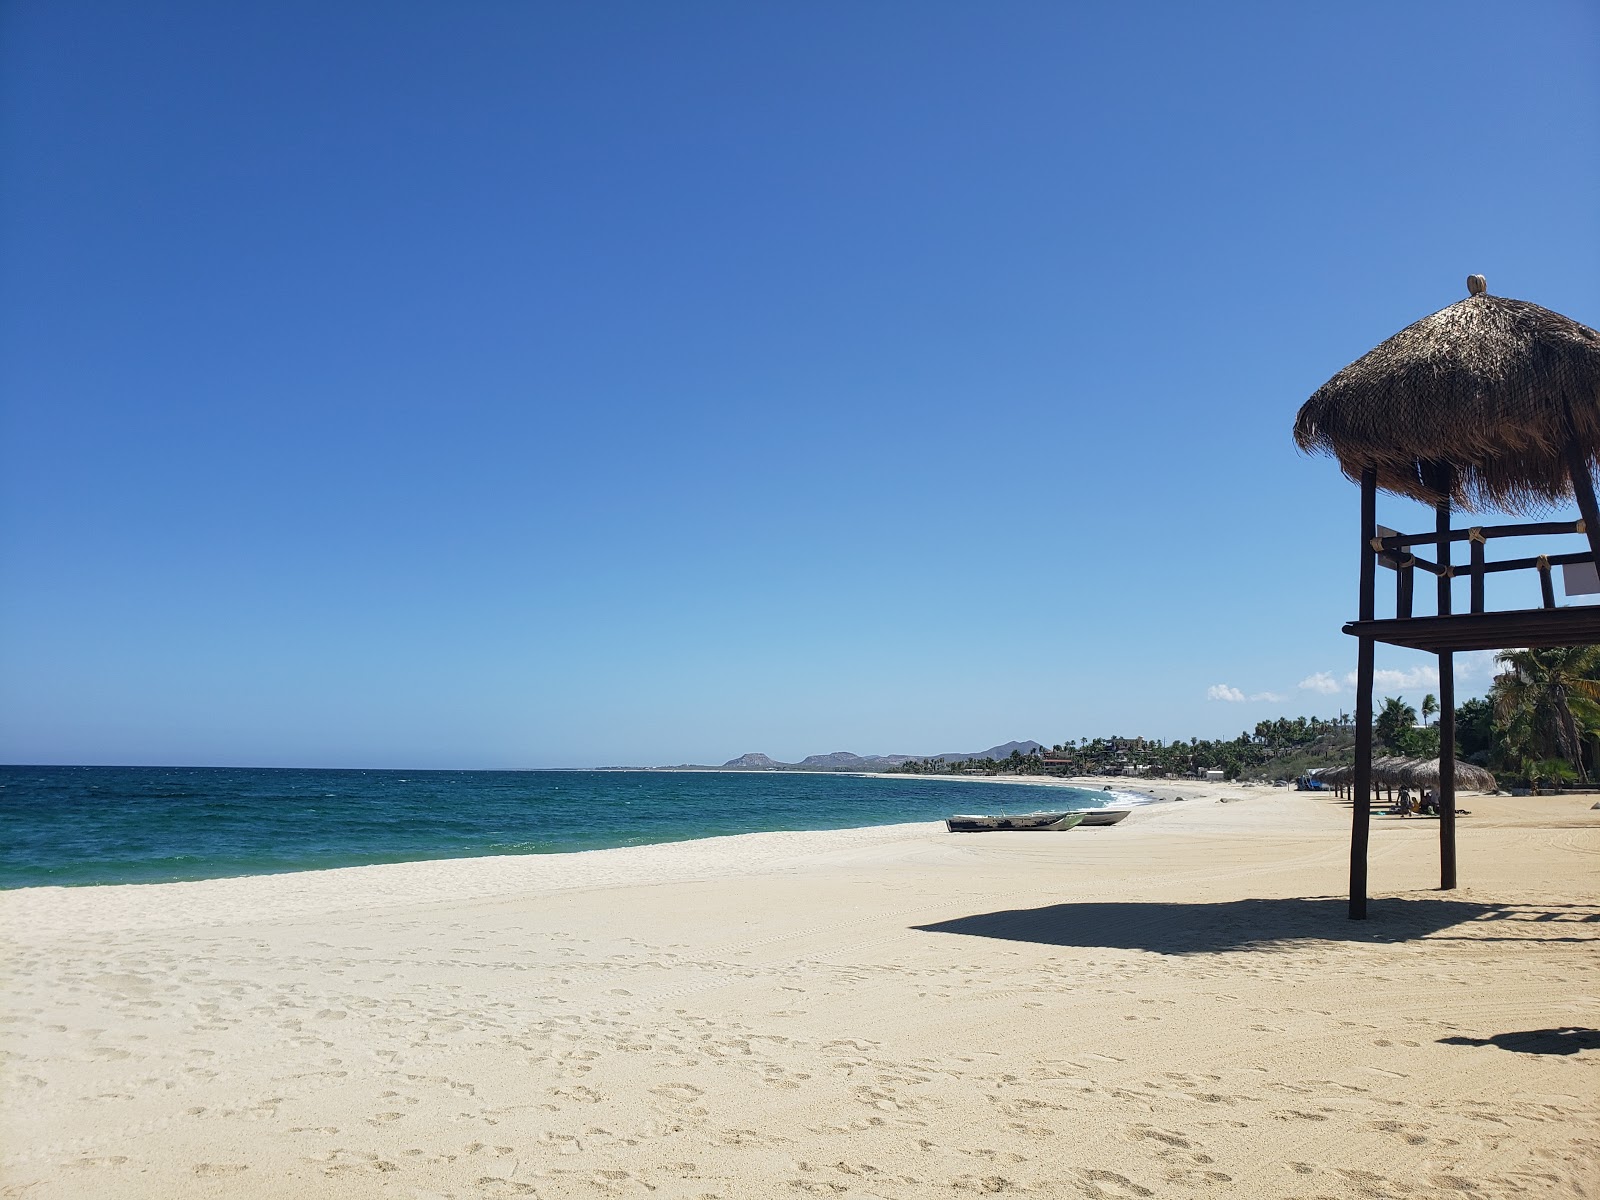 Zdjęcie Playa buena vista - popularne miejsce wśród znawców relaksu